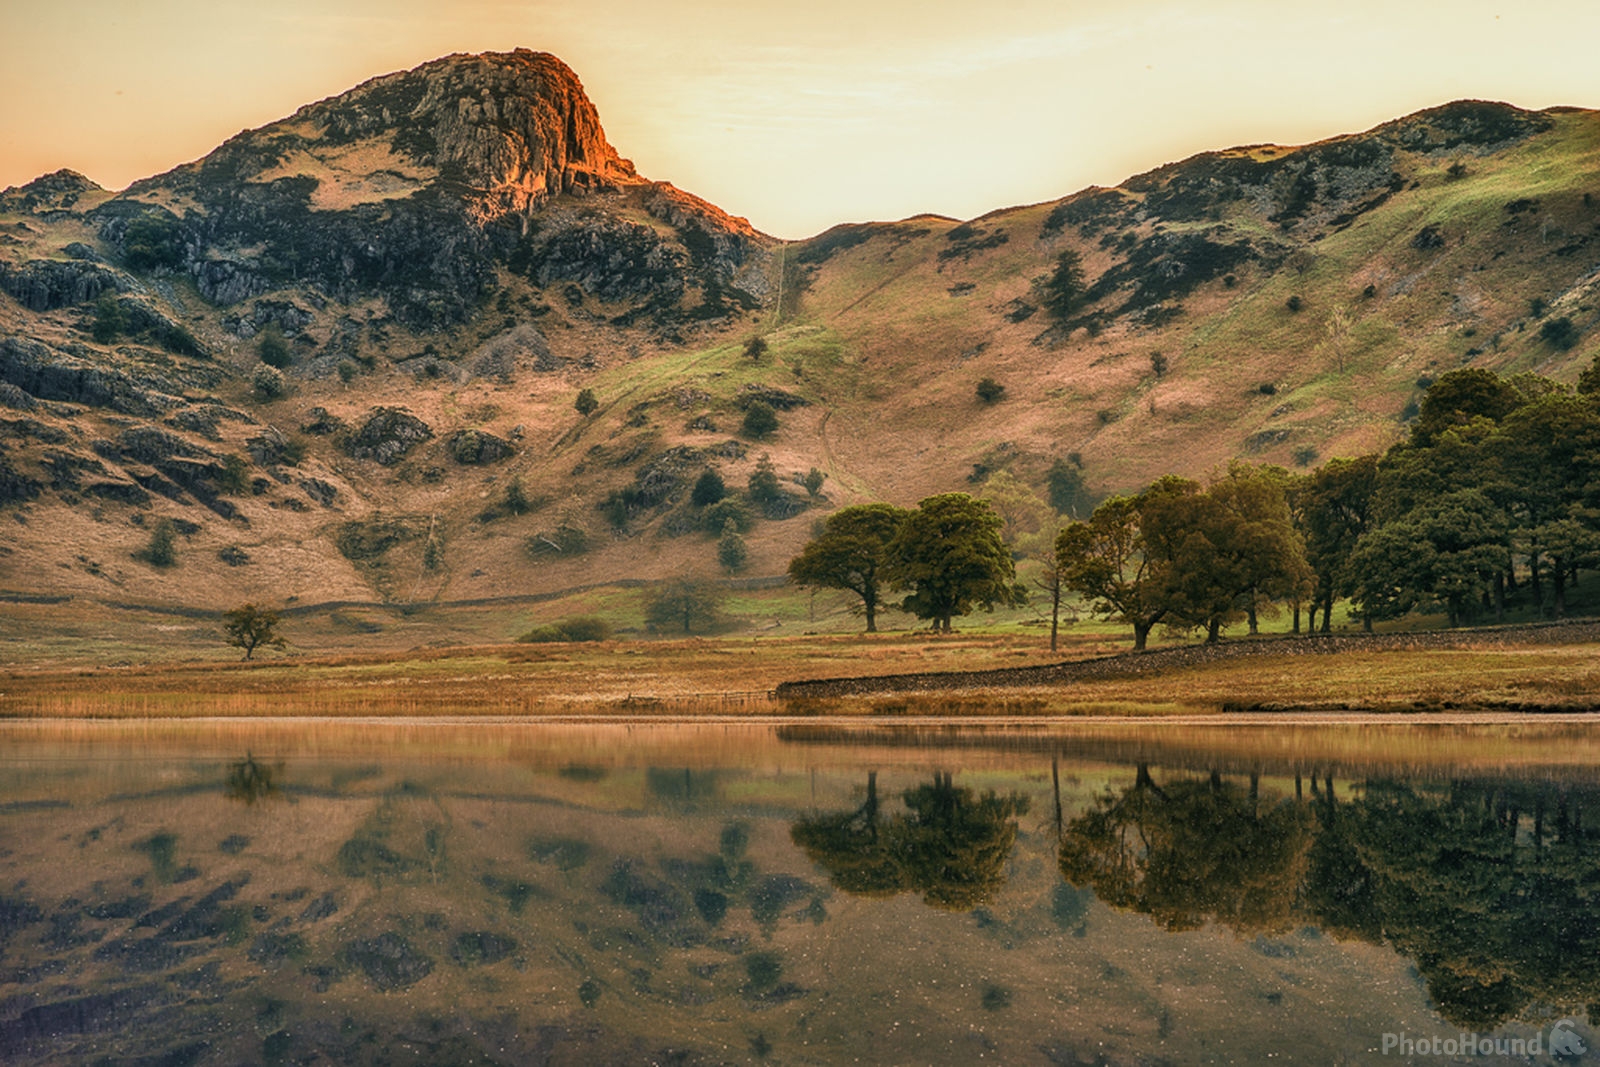 Image of Blea Tarn, Lake District by James Billings.